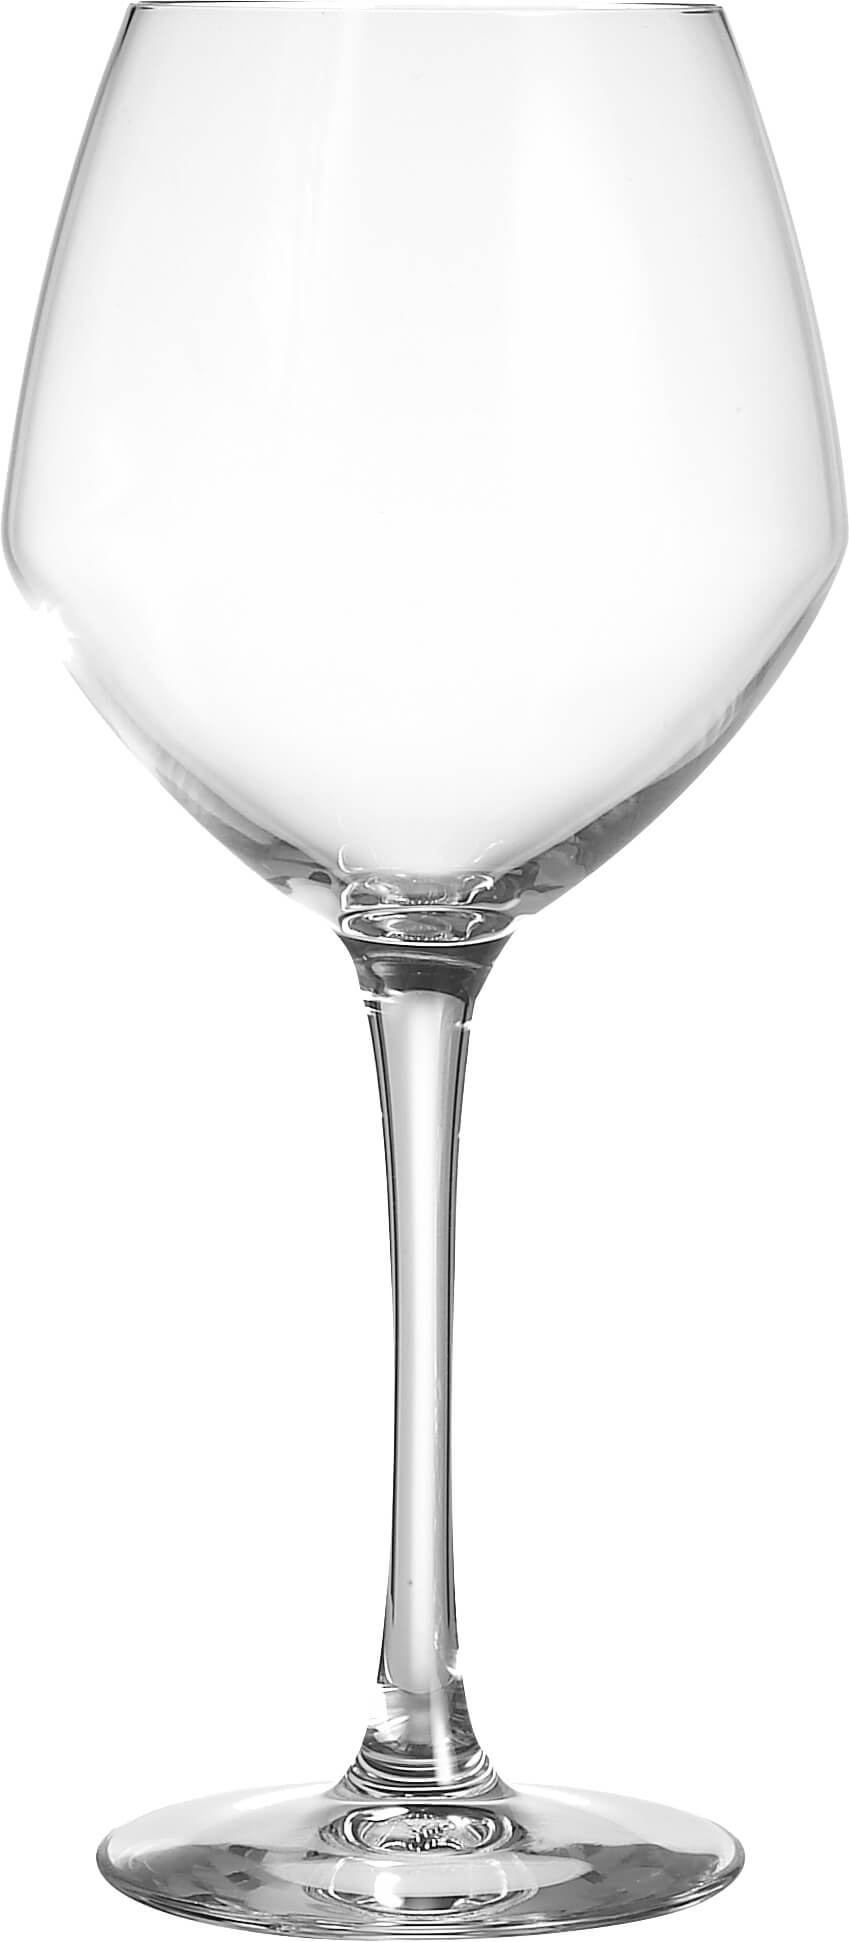 Vins Jeunes Glas Cabernet, C&S - 470ml (6 Stk.)